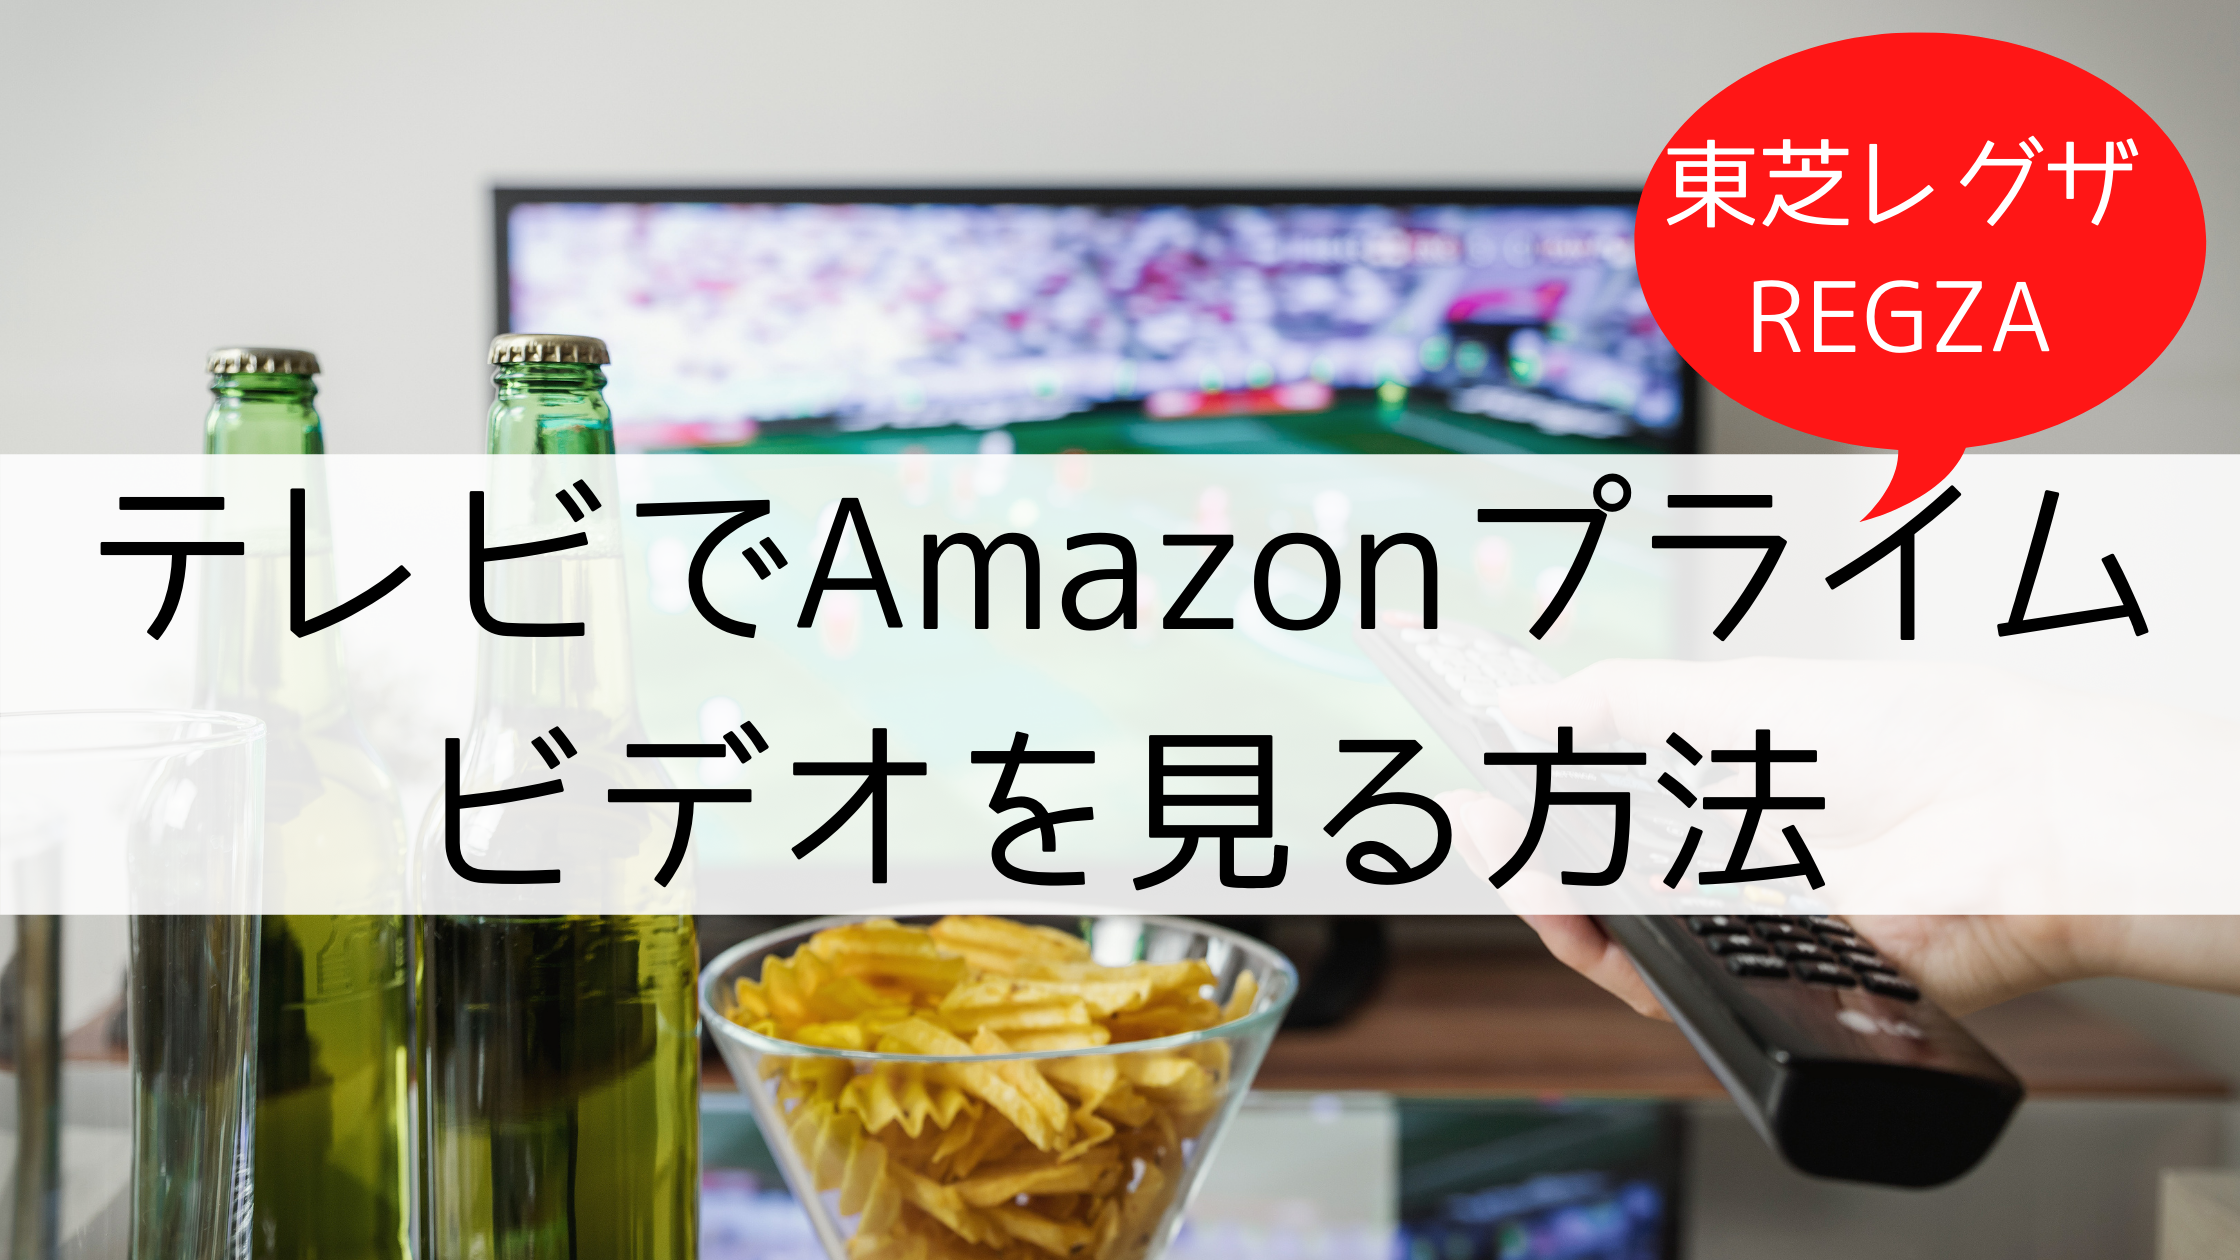 【東芝レグザ(REGZA)】アマゾンプライムビデオをテレビで見る方法。対応テレビの調べ方